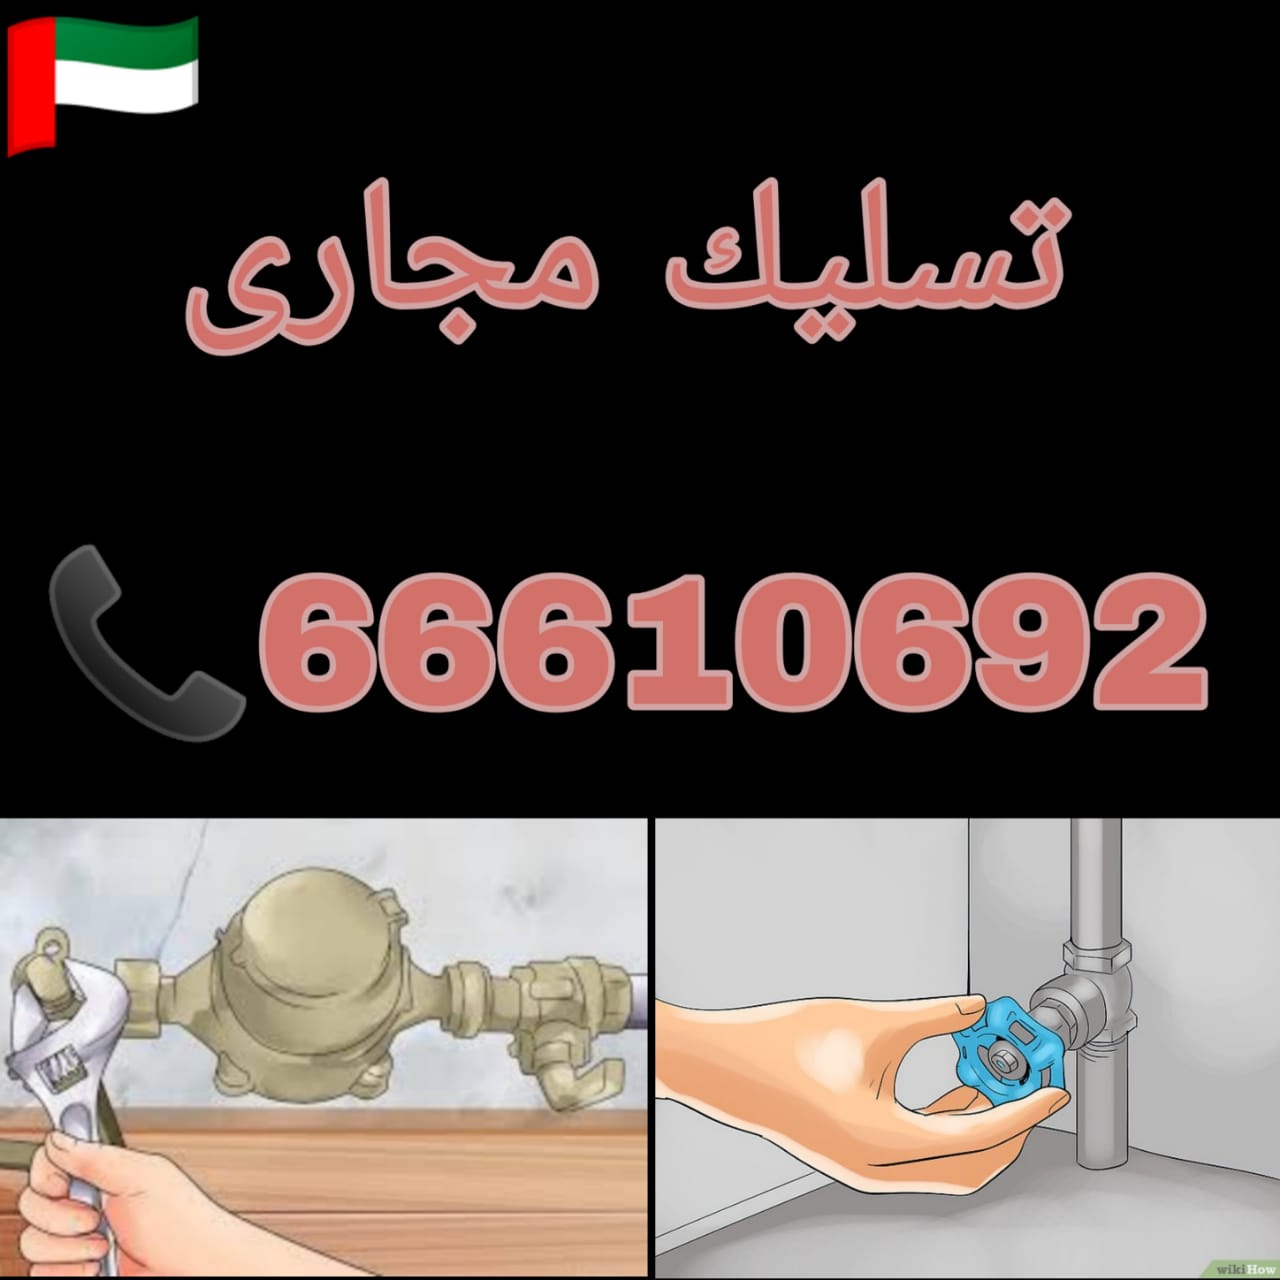 تسليك مجاري الجليعة / 66610692 / صيانة وتركيب ادوات صحية الكويت